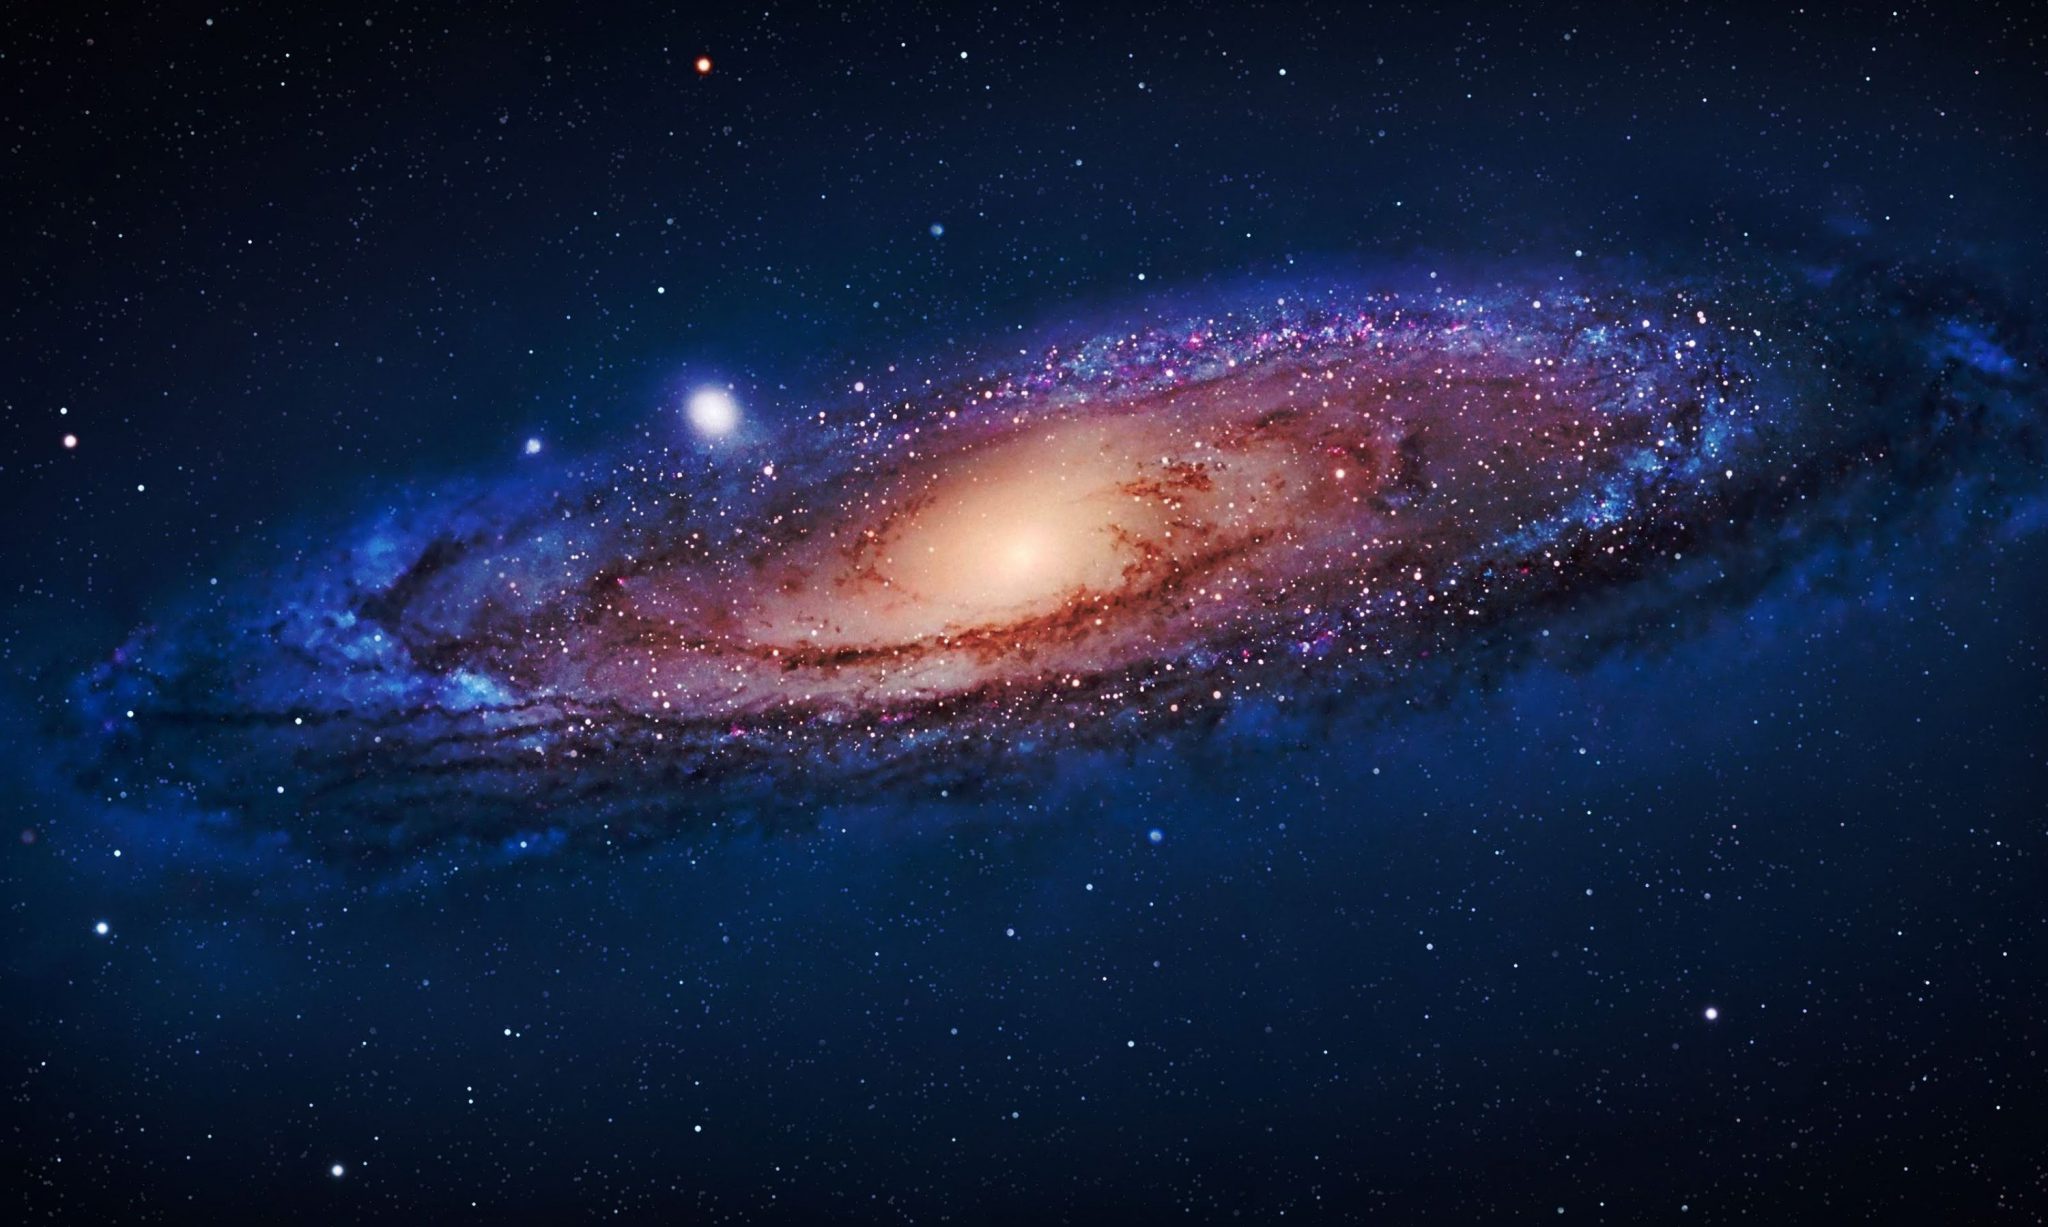 دليل رصد السماء في قطر خلال شهر سبتمبر 2018 Stellarium 152 مركز قطر لعلوم الفضاء والفلك سلمان بن جبر آل ثاني نحن الأن في شهر سبتمبر حيث يبدأ فصل الخريف فلكيا في قطر في الثلث الأخير من الشهر وبما أننا على أعتاب فصل الخريف لذلك تبدأ درجات